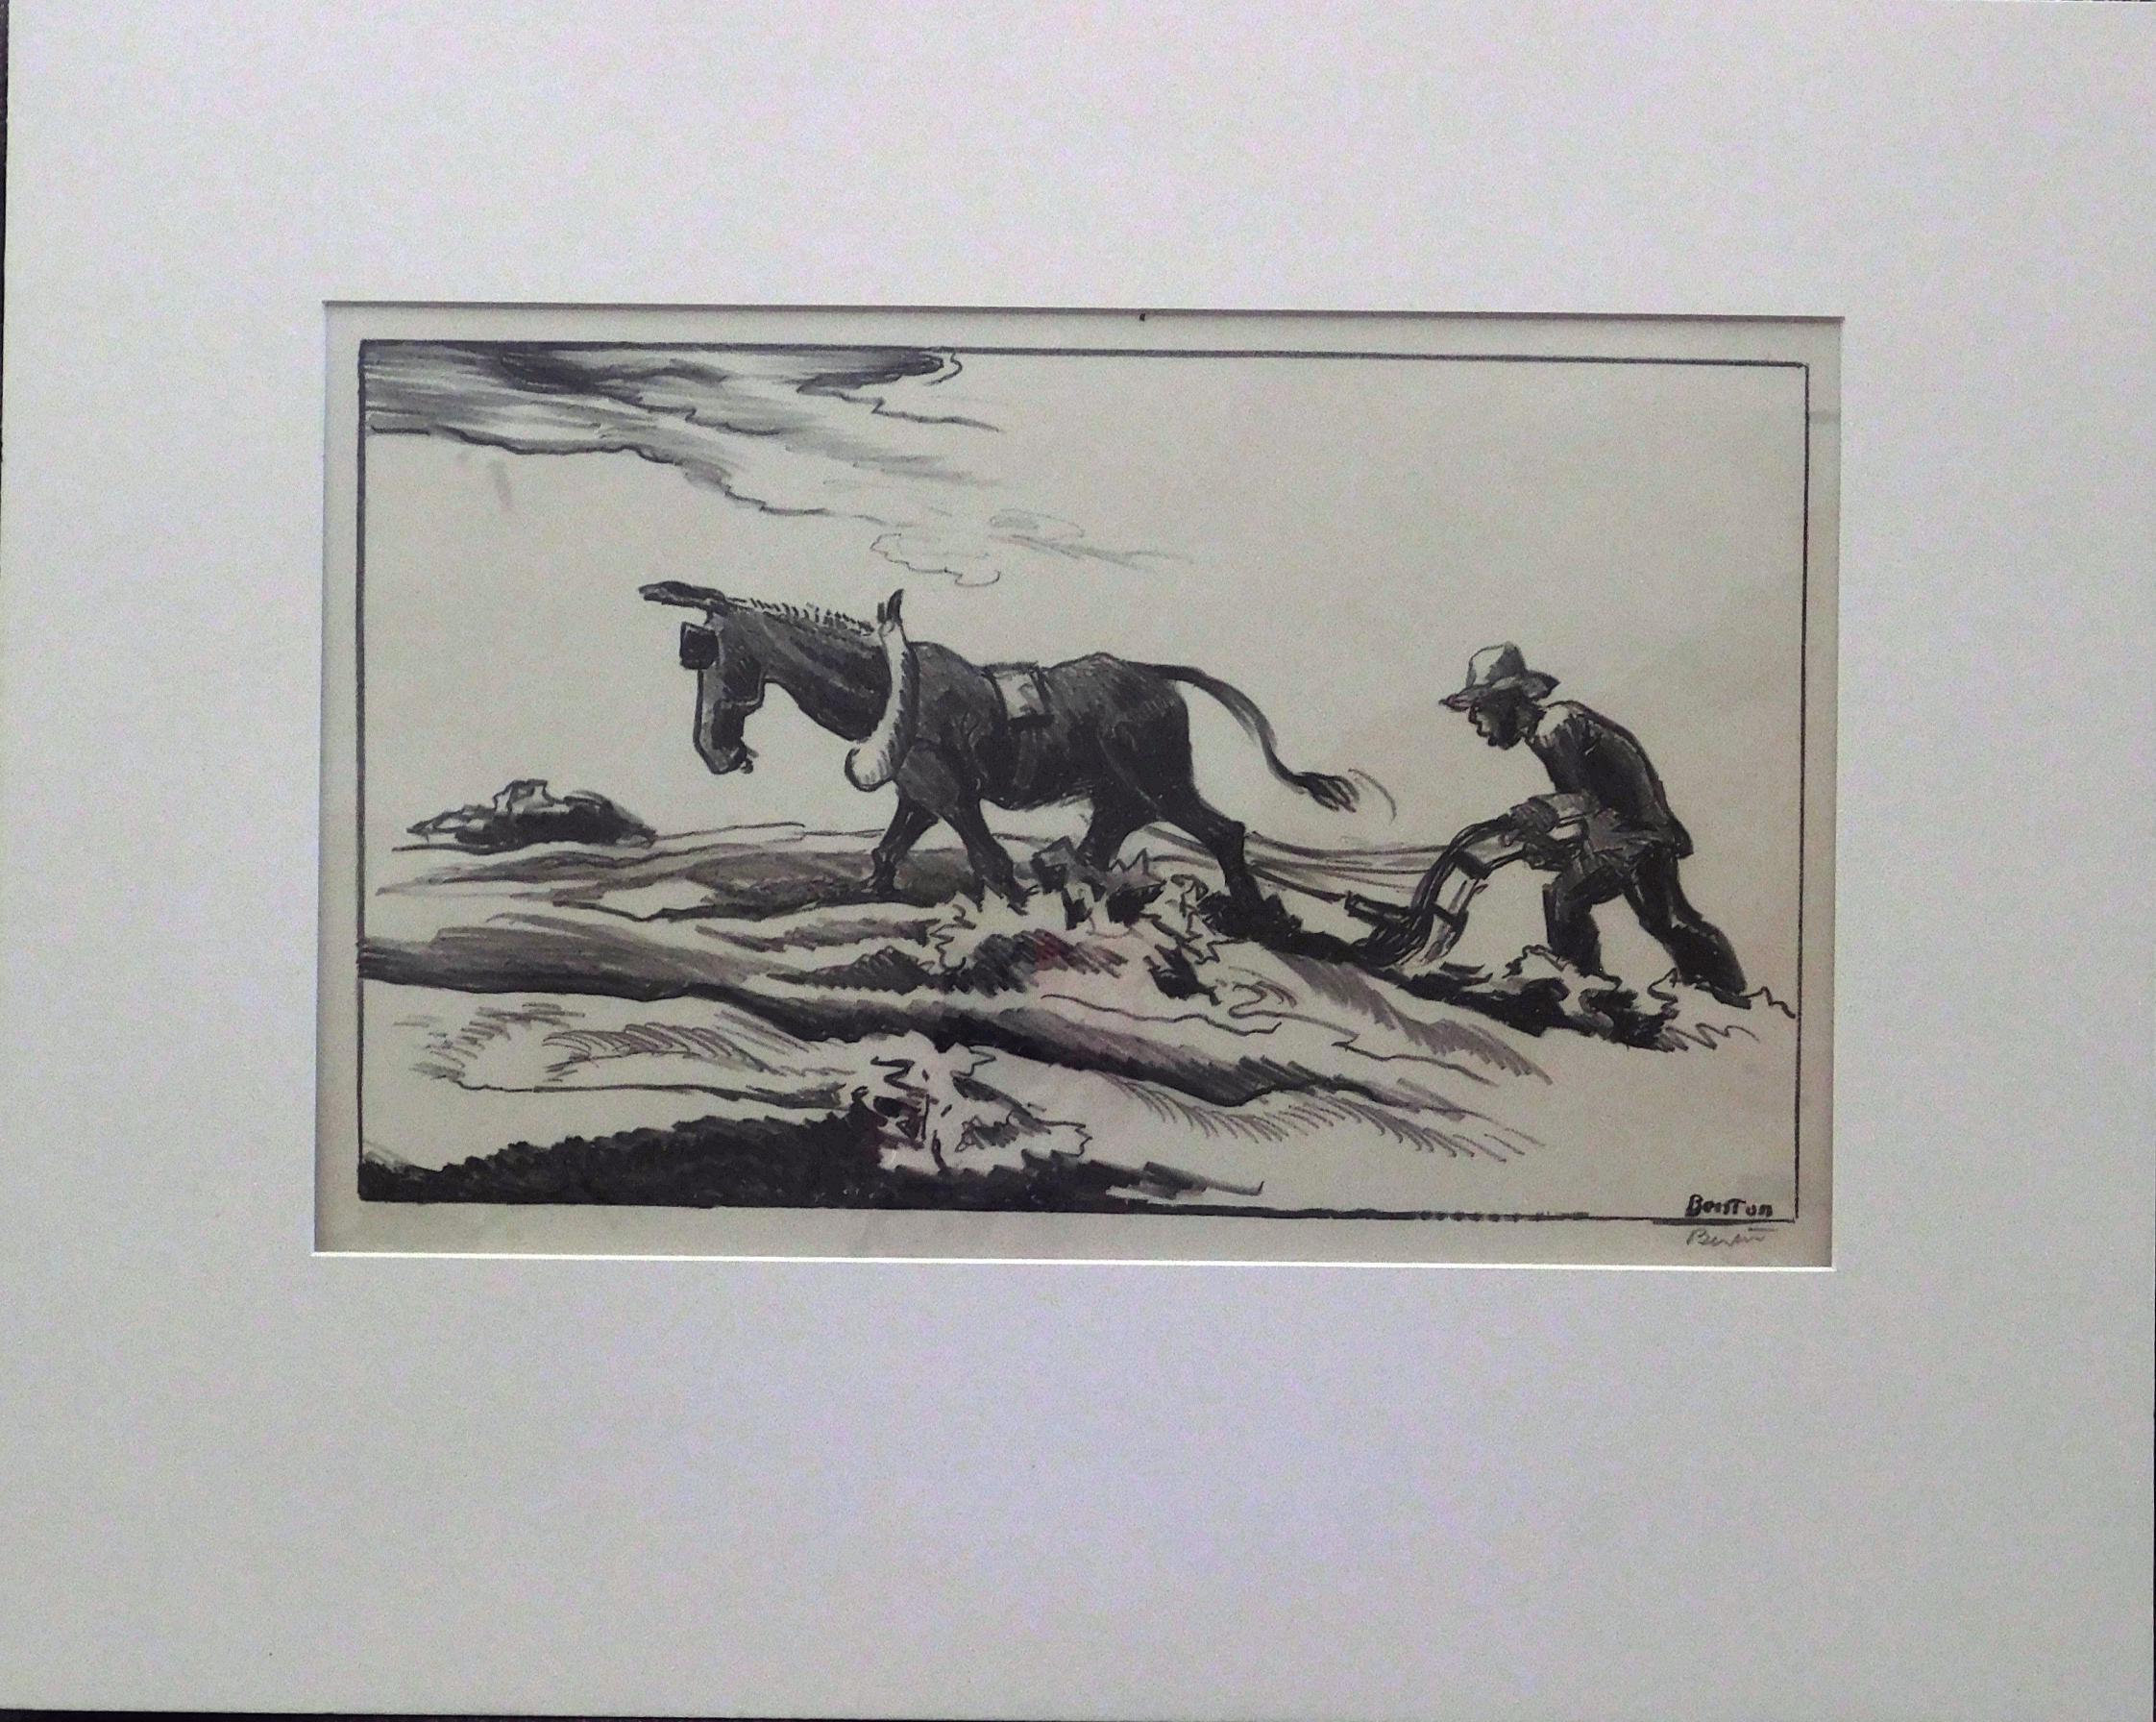 Thomas Hart Benton (1889-1975) Lithographie originale sur pierre.
Titre : Plowing it Under (aussi Ploughing), 1934. 
Non encadré et présenté dans un passe-partout de musée de 4 plis.
Taille de l'image : 8 